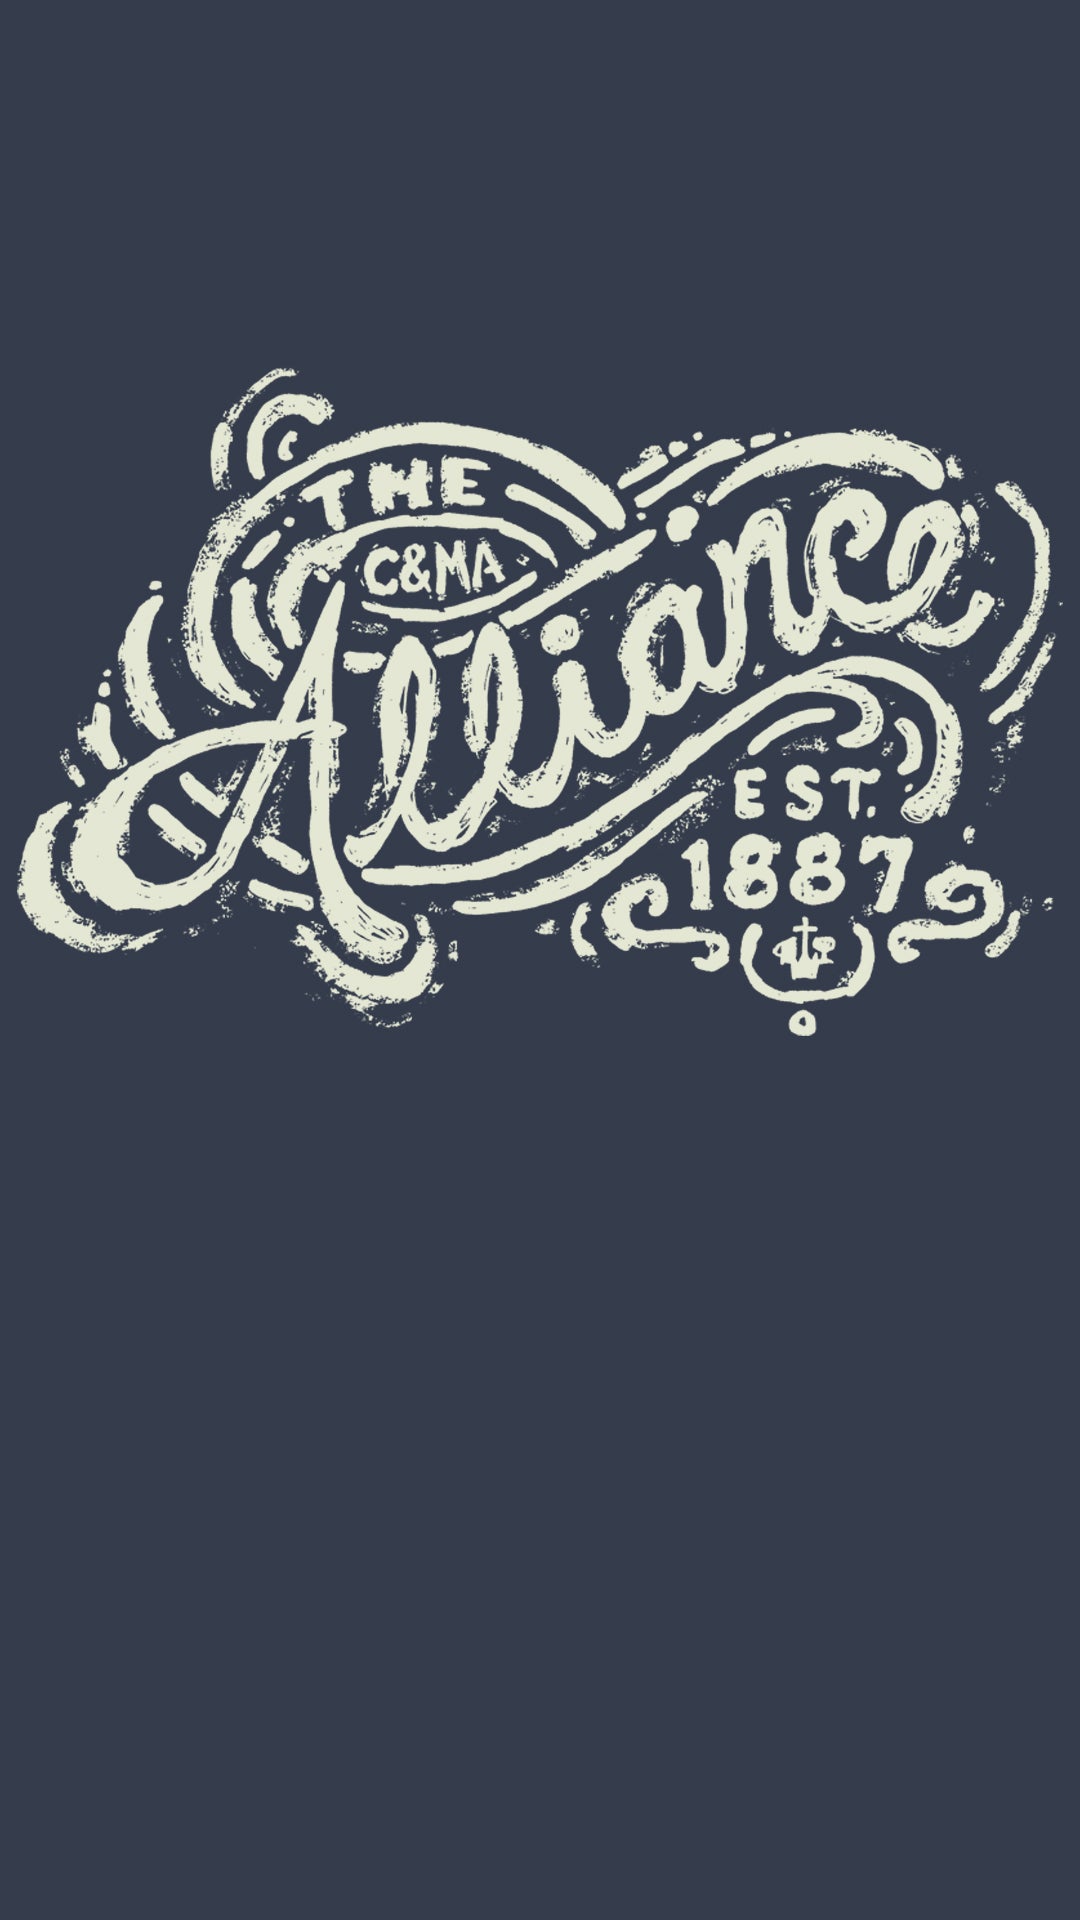 Alliance Drawn Design